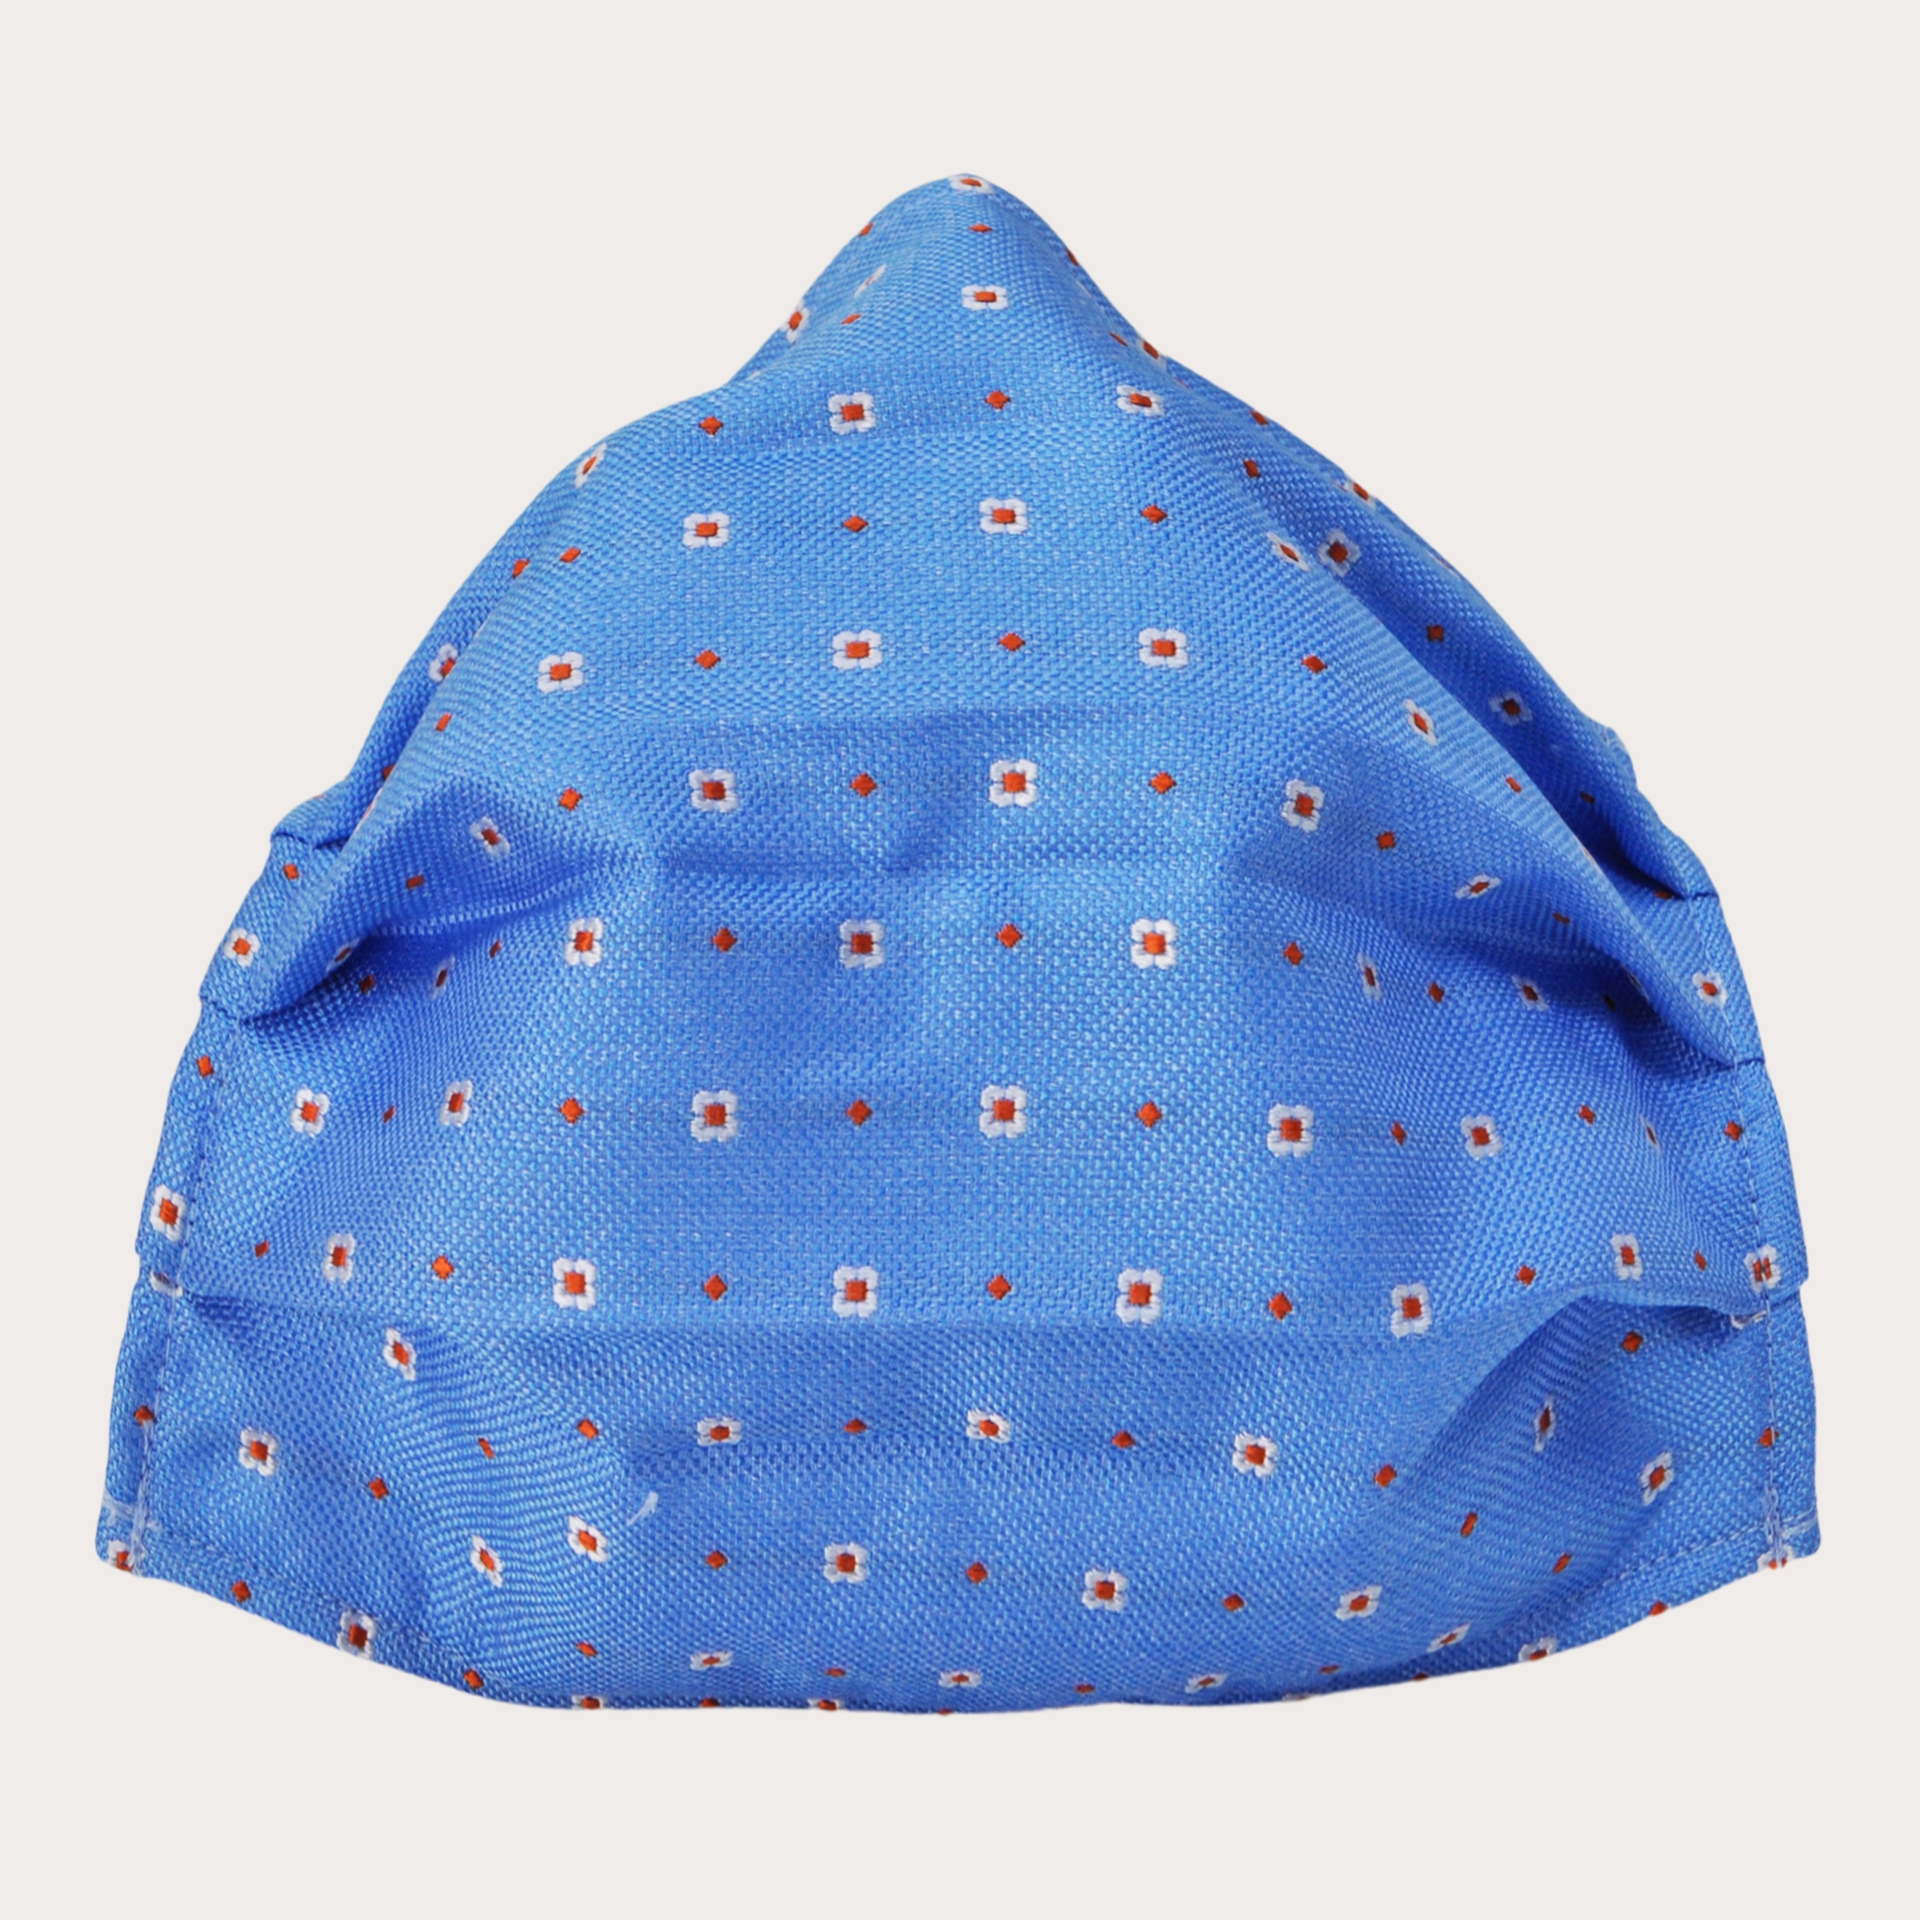 Mascarilla lavable StyleMask en seda, motivo azul claro con flores